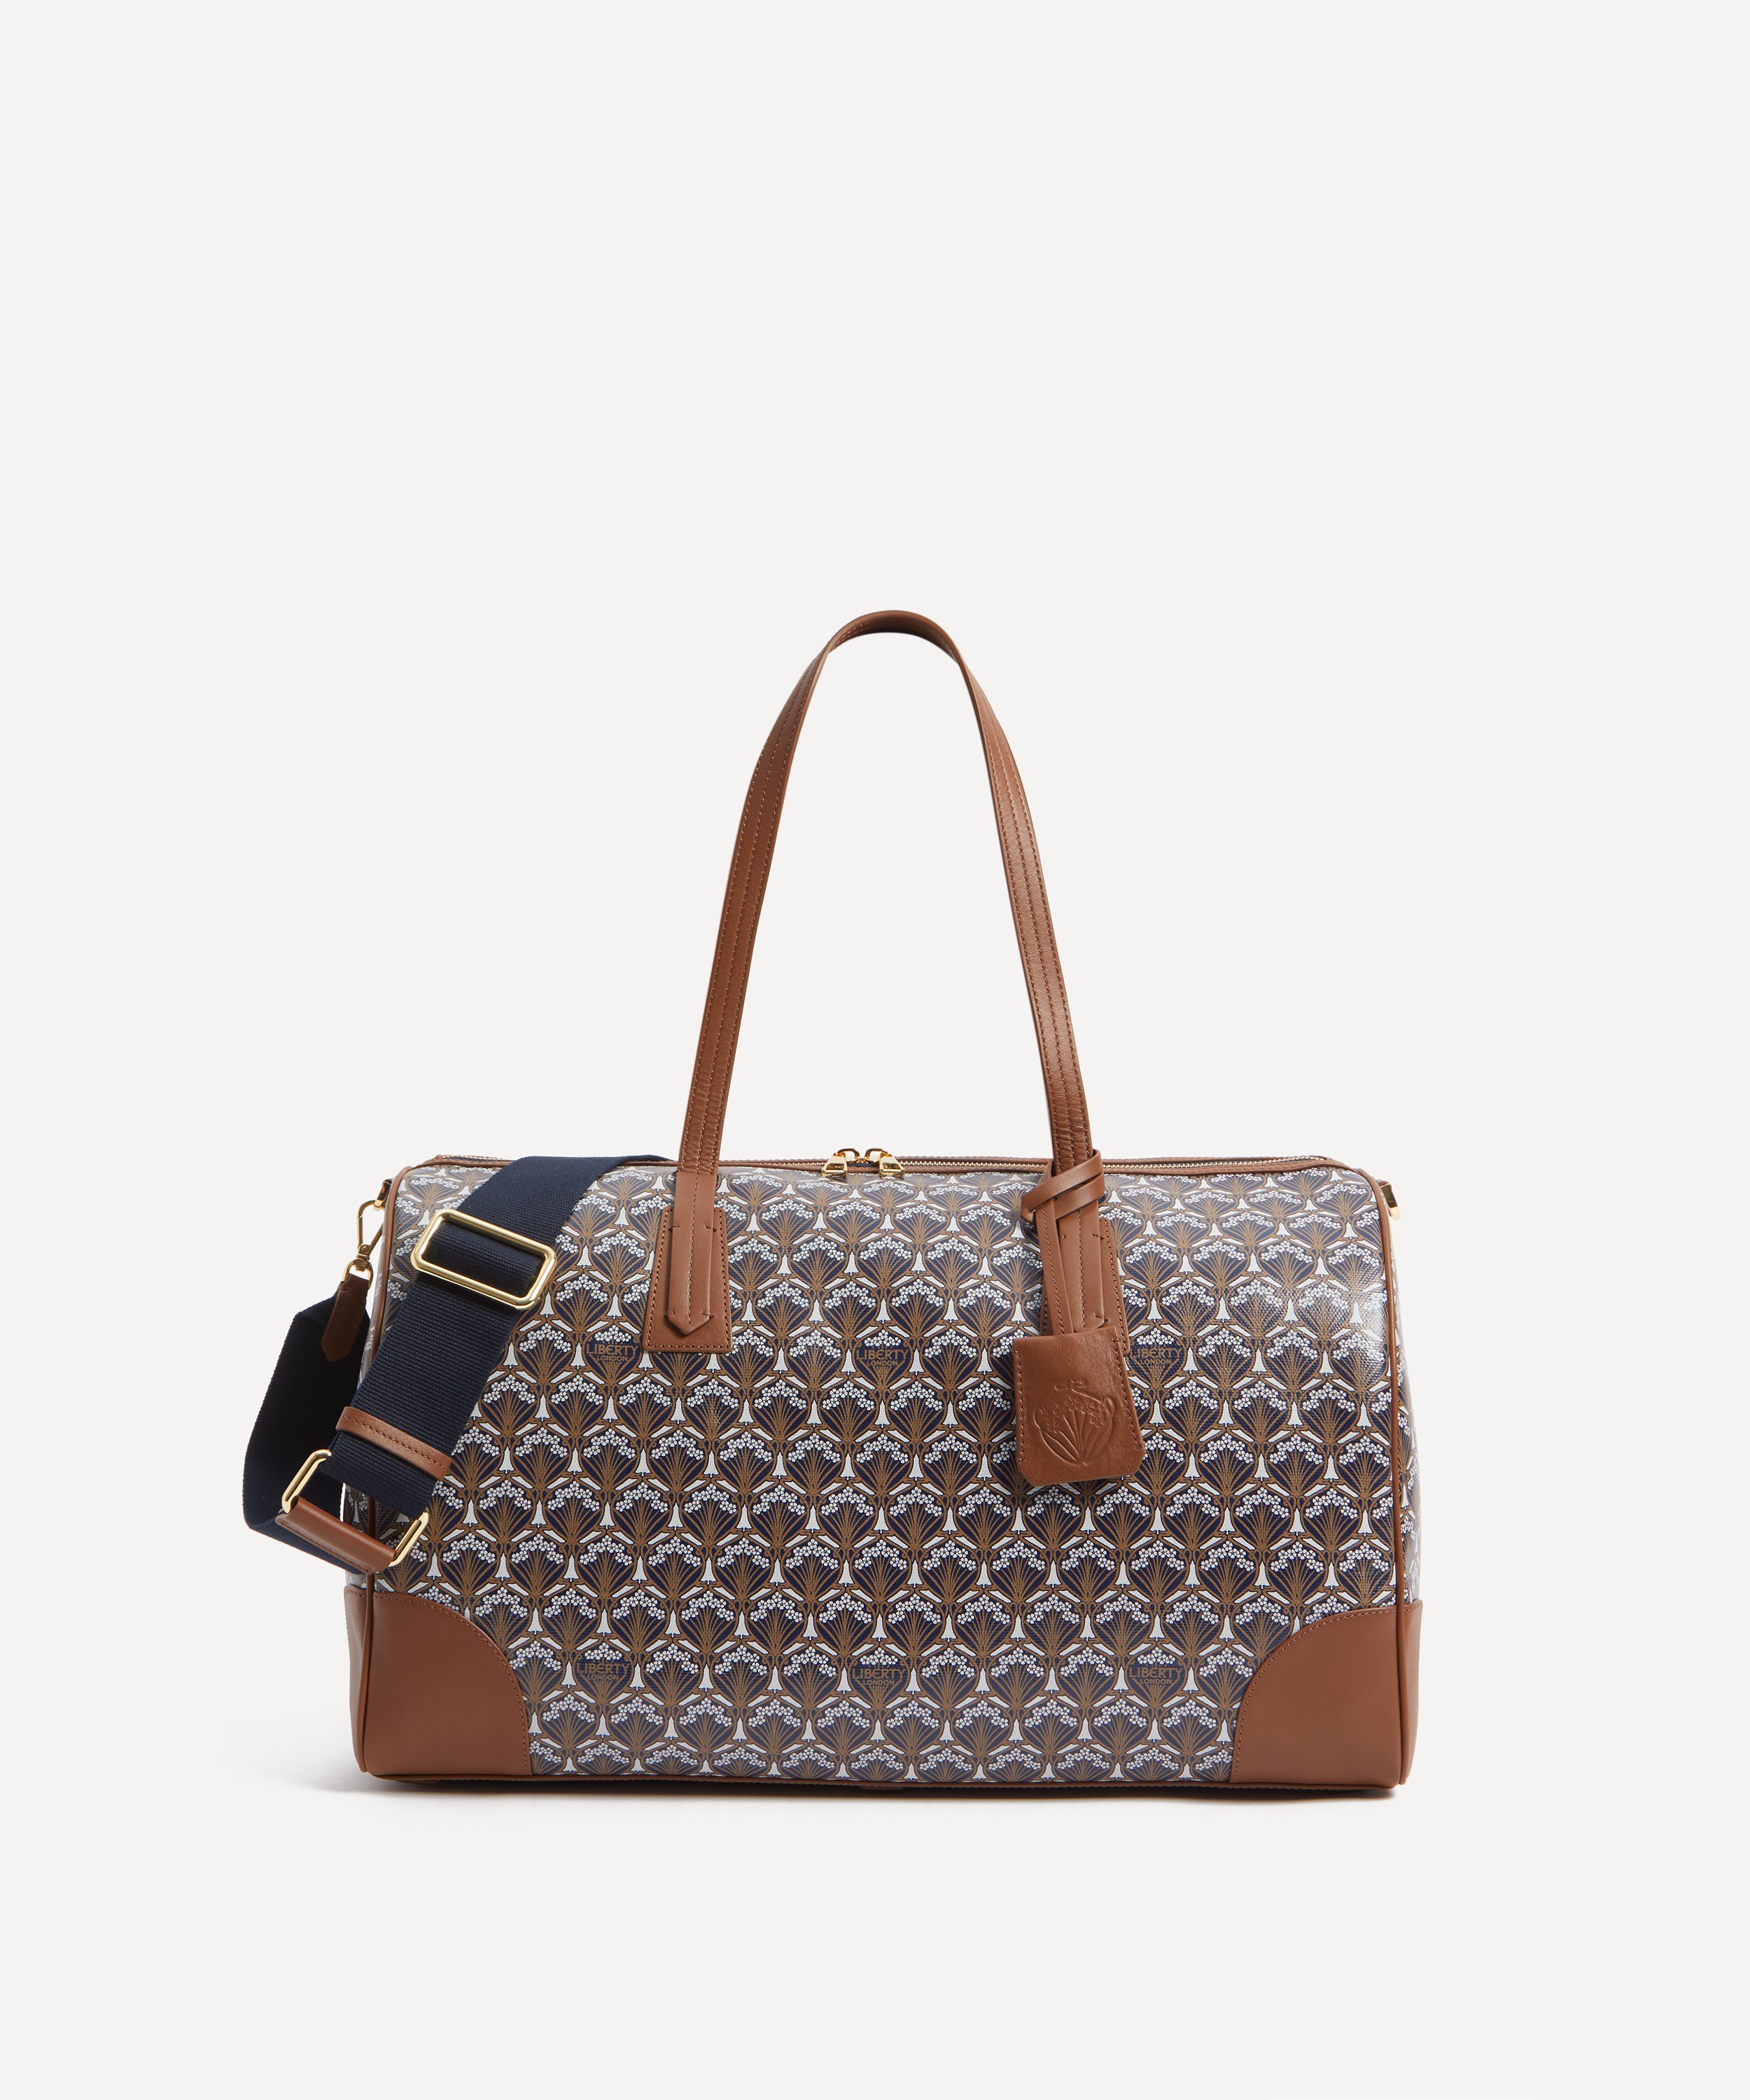 Louis Vuitton, Bags, Refurbished Louis Vuitton 0 Percent Aut